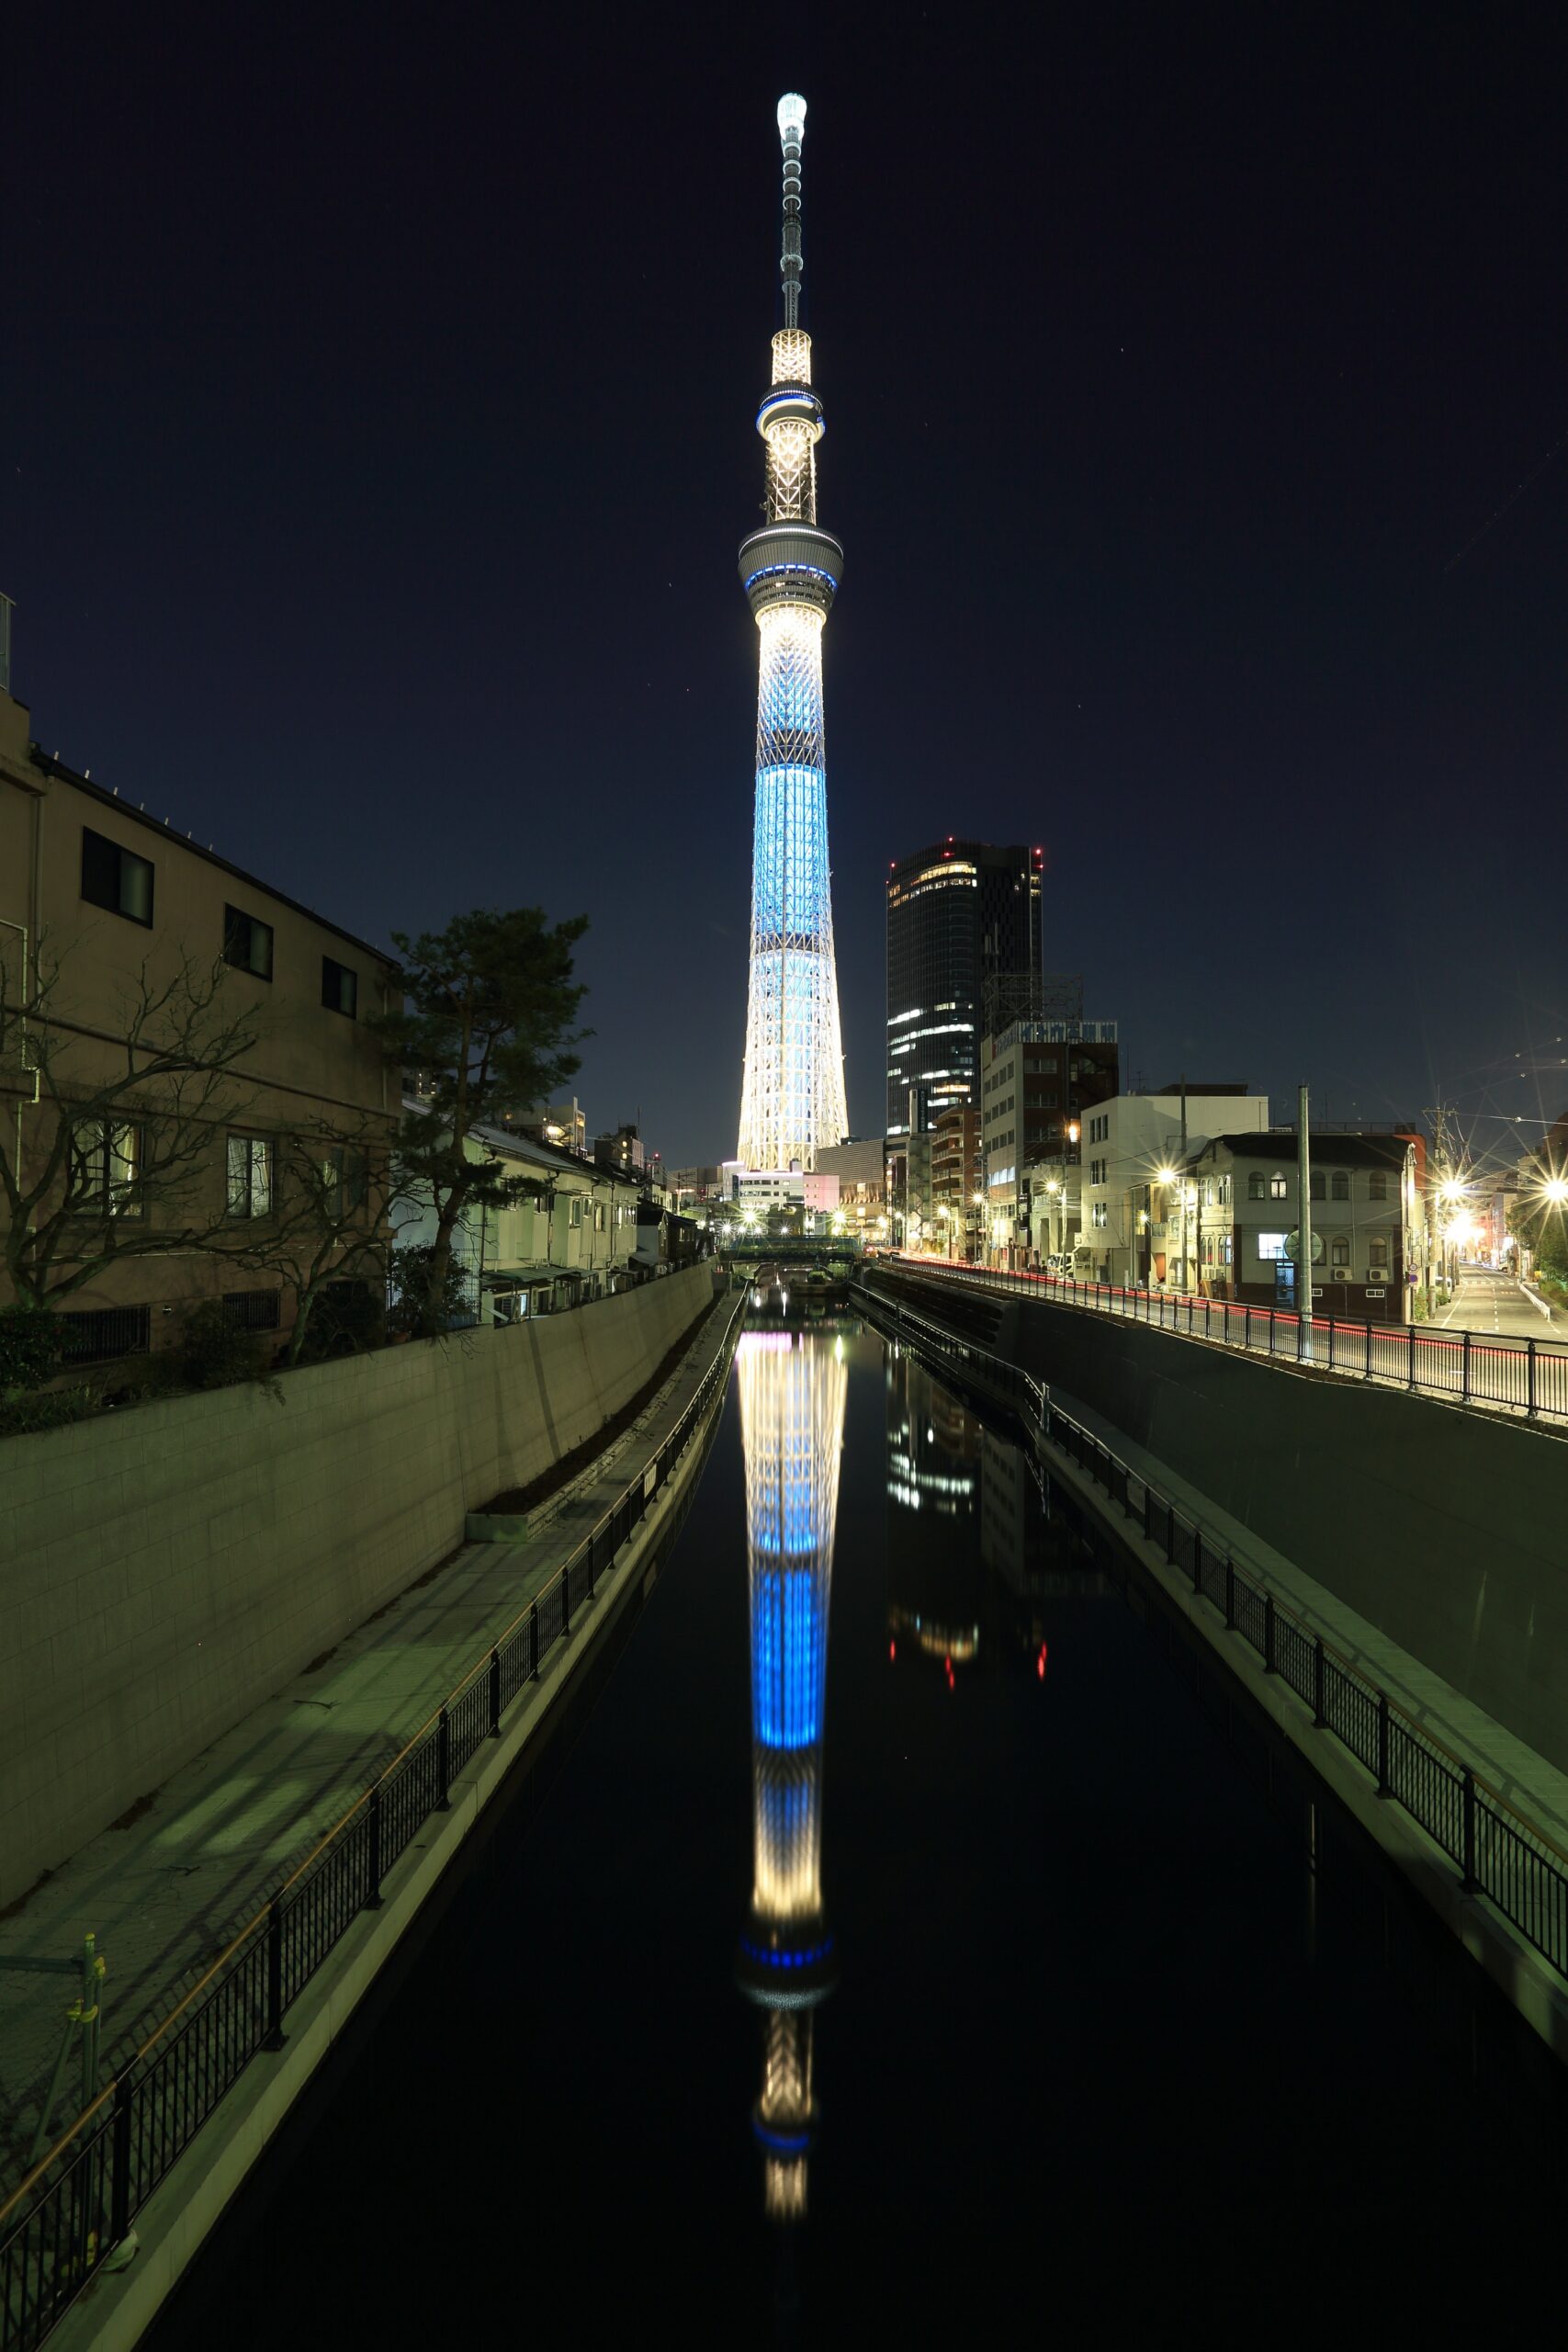 โตเกียวสกายทรี หอโทรทัศน์สูงเสียดฟ้าที่ดูวิวสวยงามระดับล้าน (ทัวร์ญี่ปุ่นกรุ๊ปเหมา EP1)